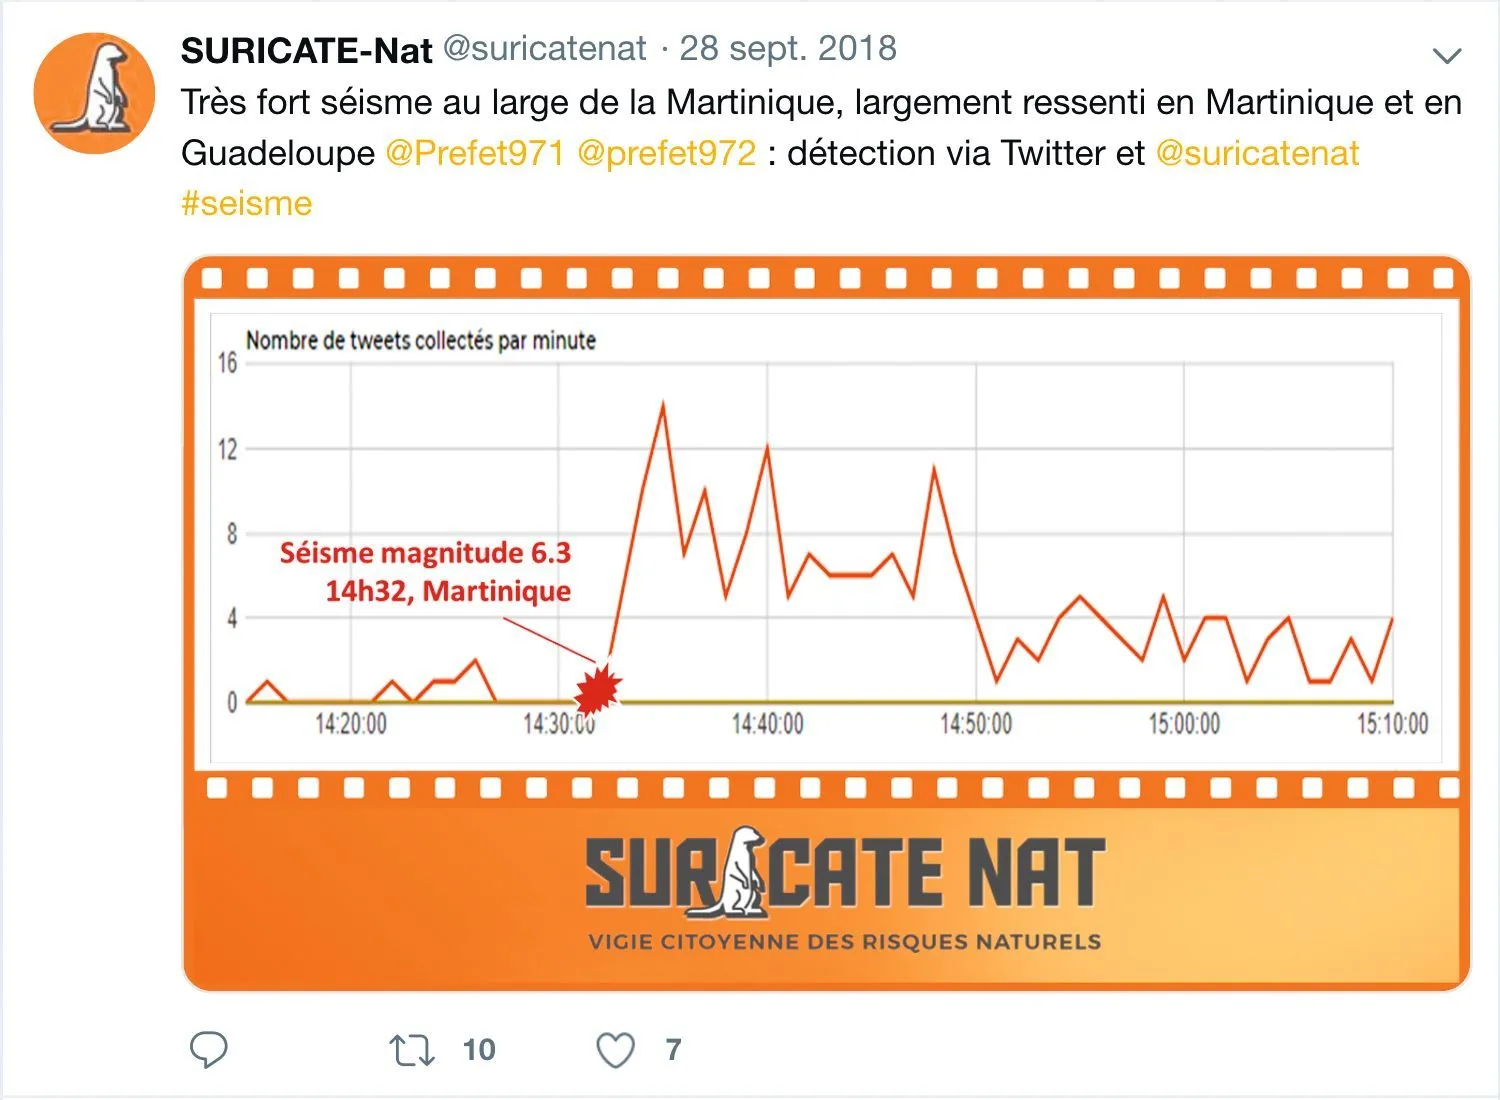 Suricate-Nat